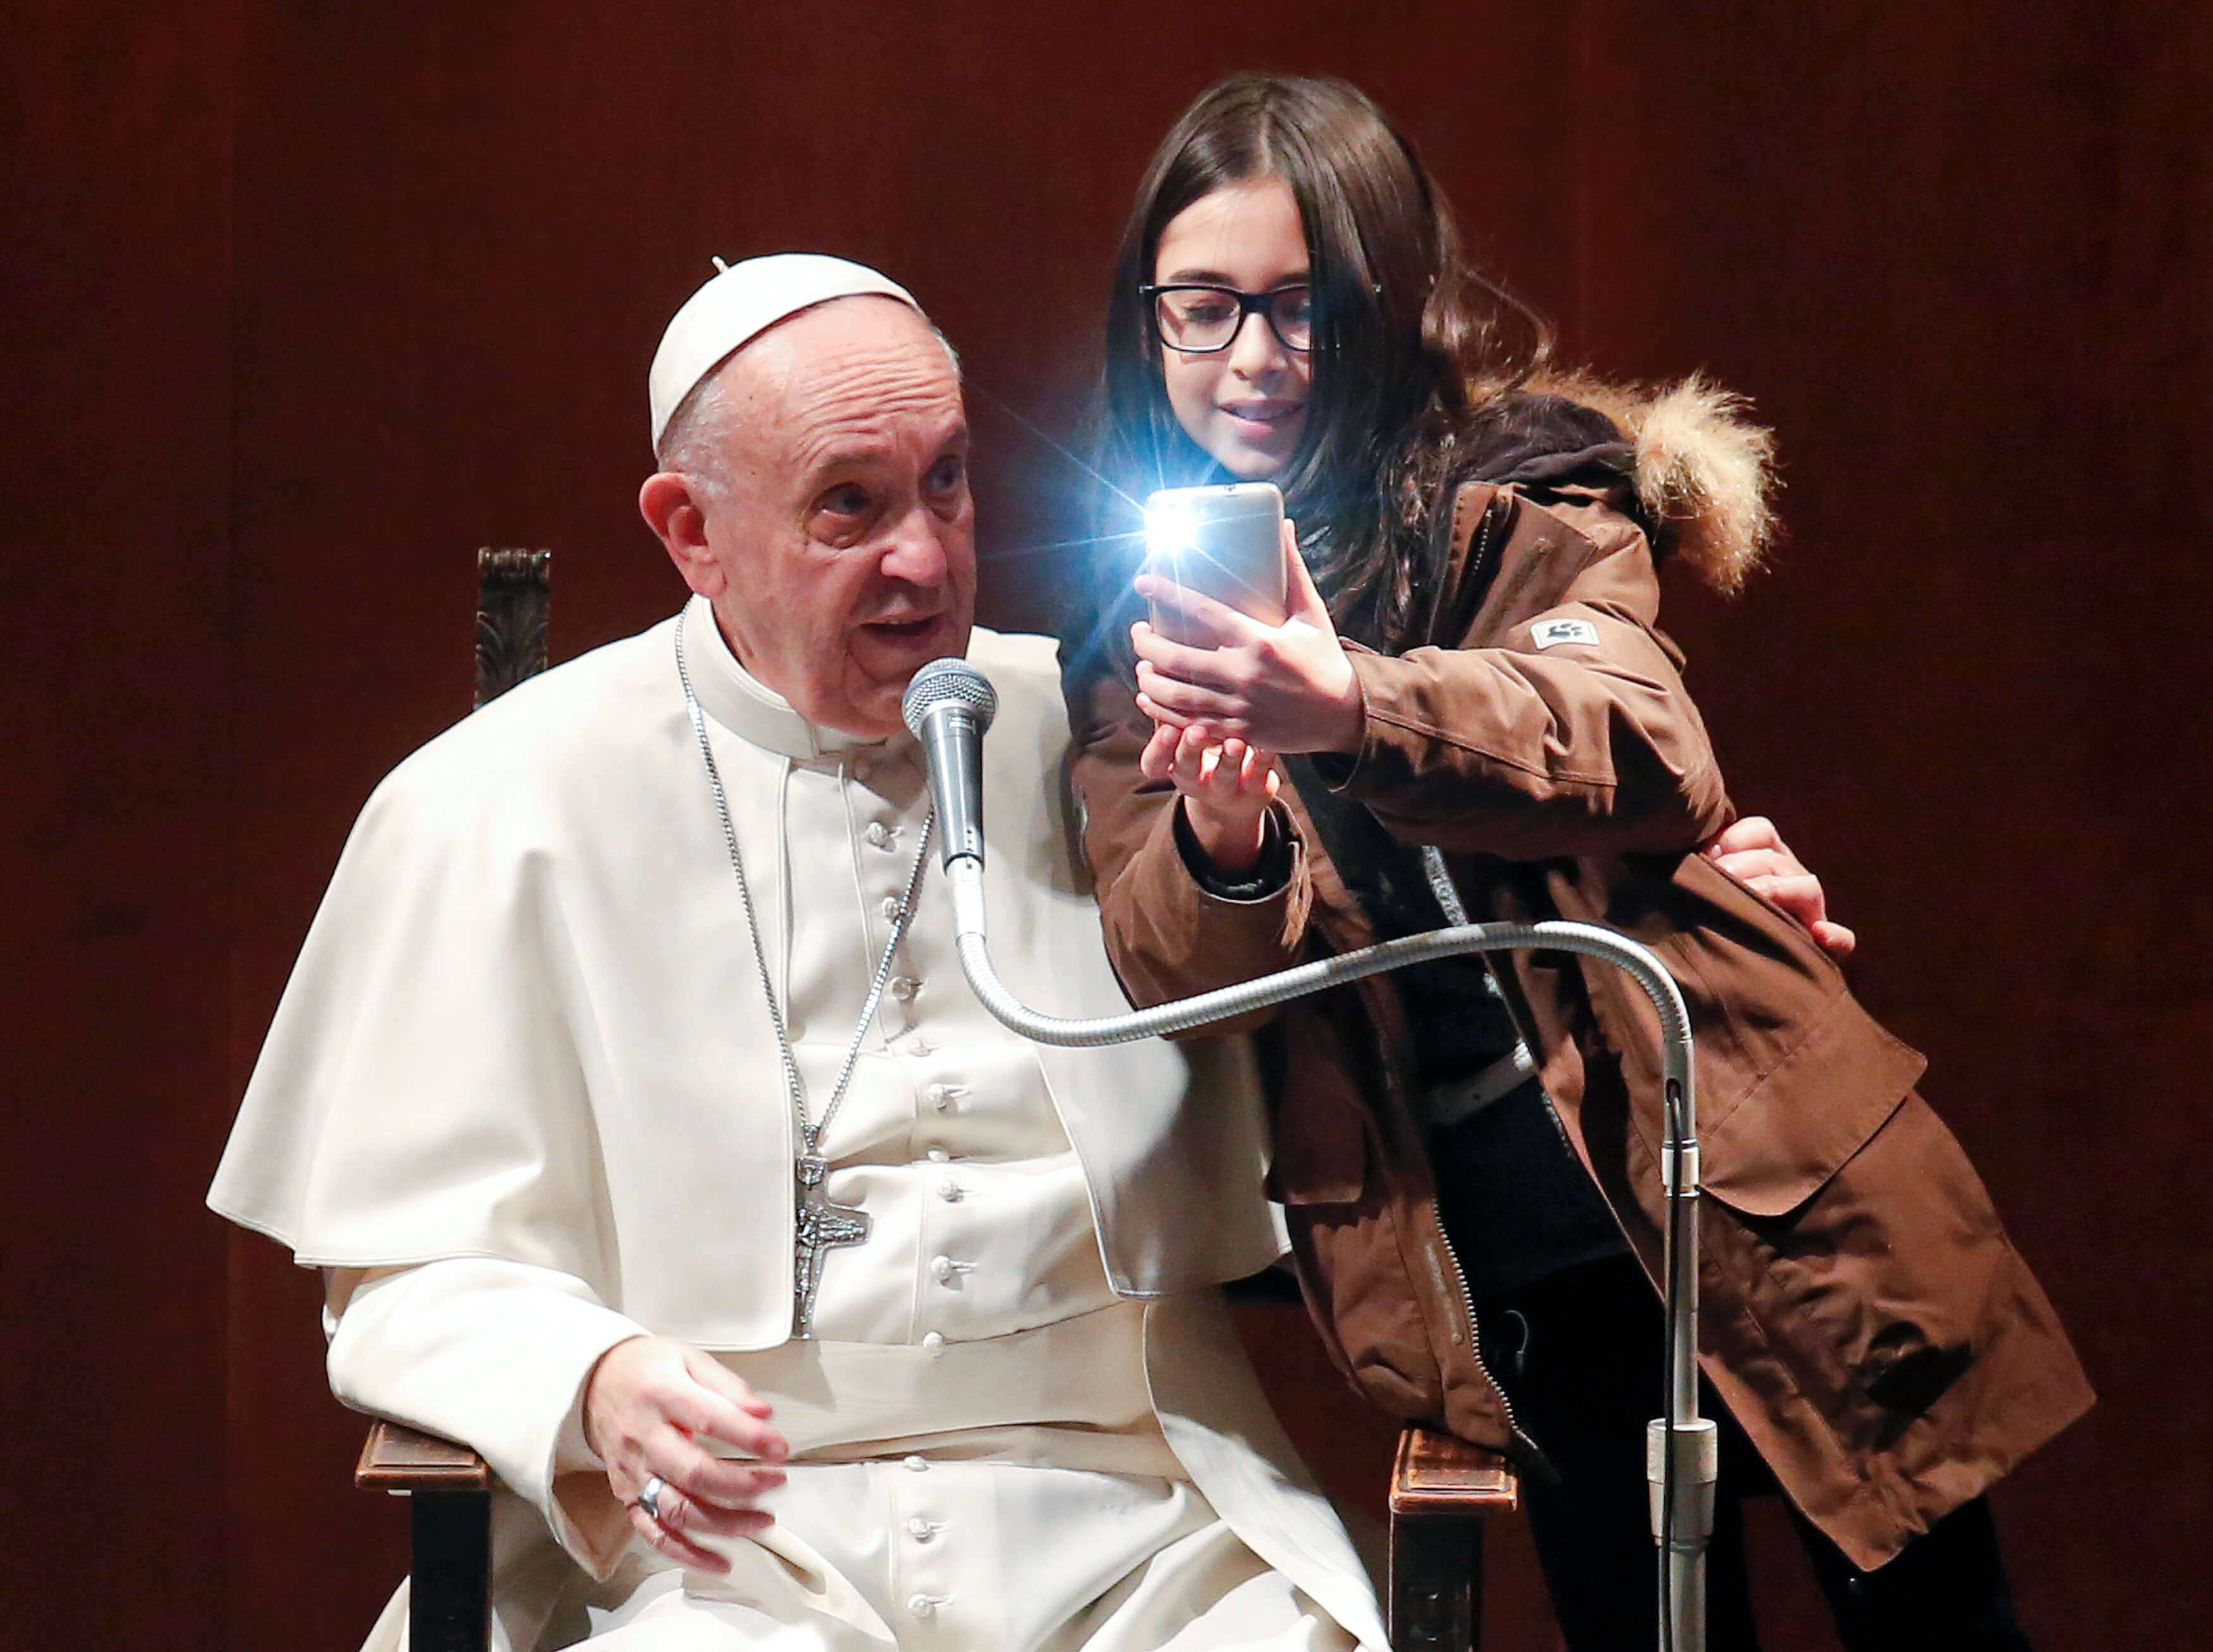 Una niña se toma una selfie con el papa Francisco durante una visita a la parroquia de Santa María Josefa del Corazón de Jesús en Roma. (Reuters)